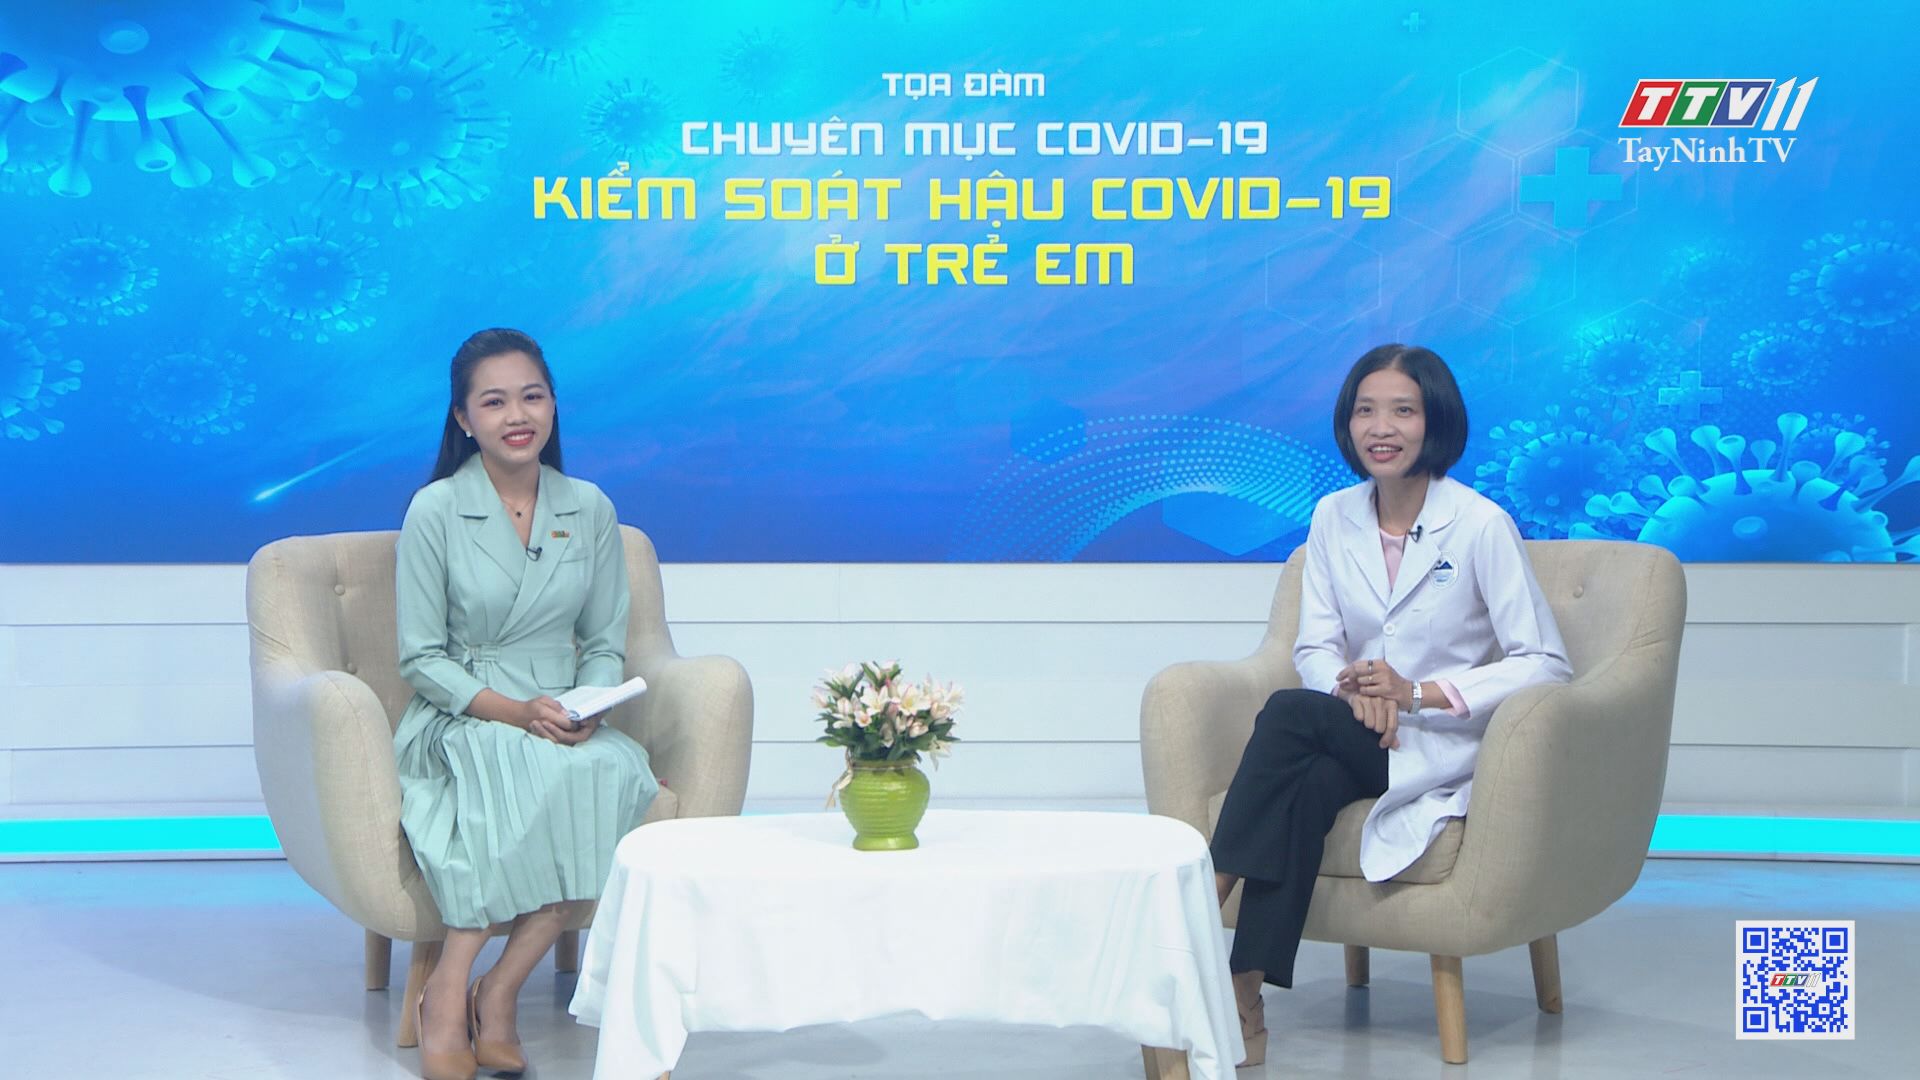 Kiểm soát hậu Covid-19 ở trẻ em | Phòng chống dịch bệnh Covid-19 | TayNinhTV